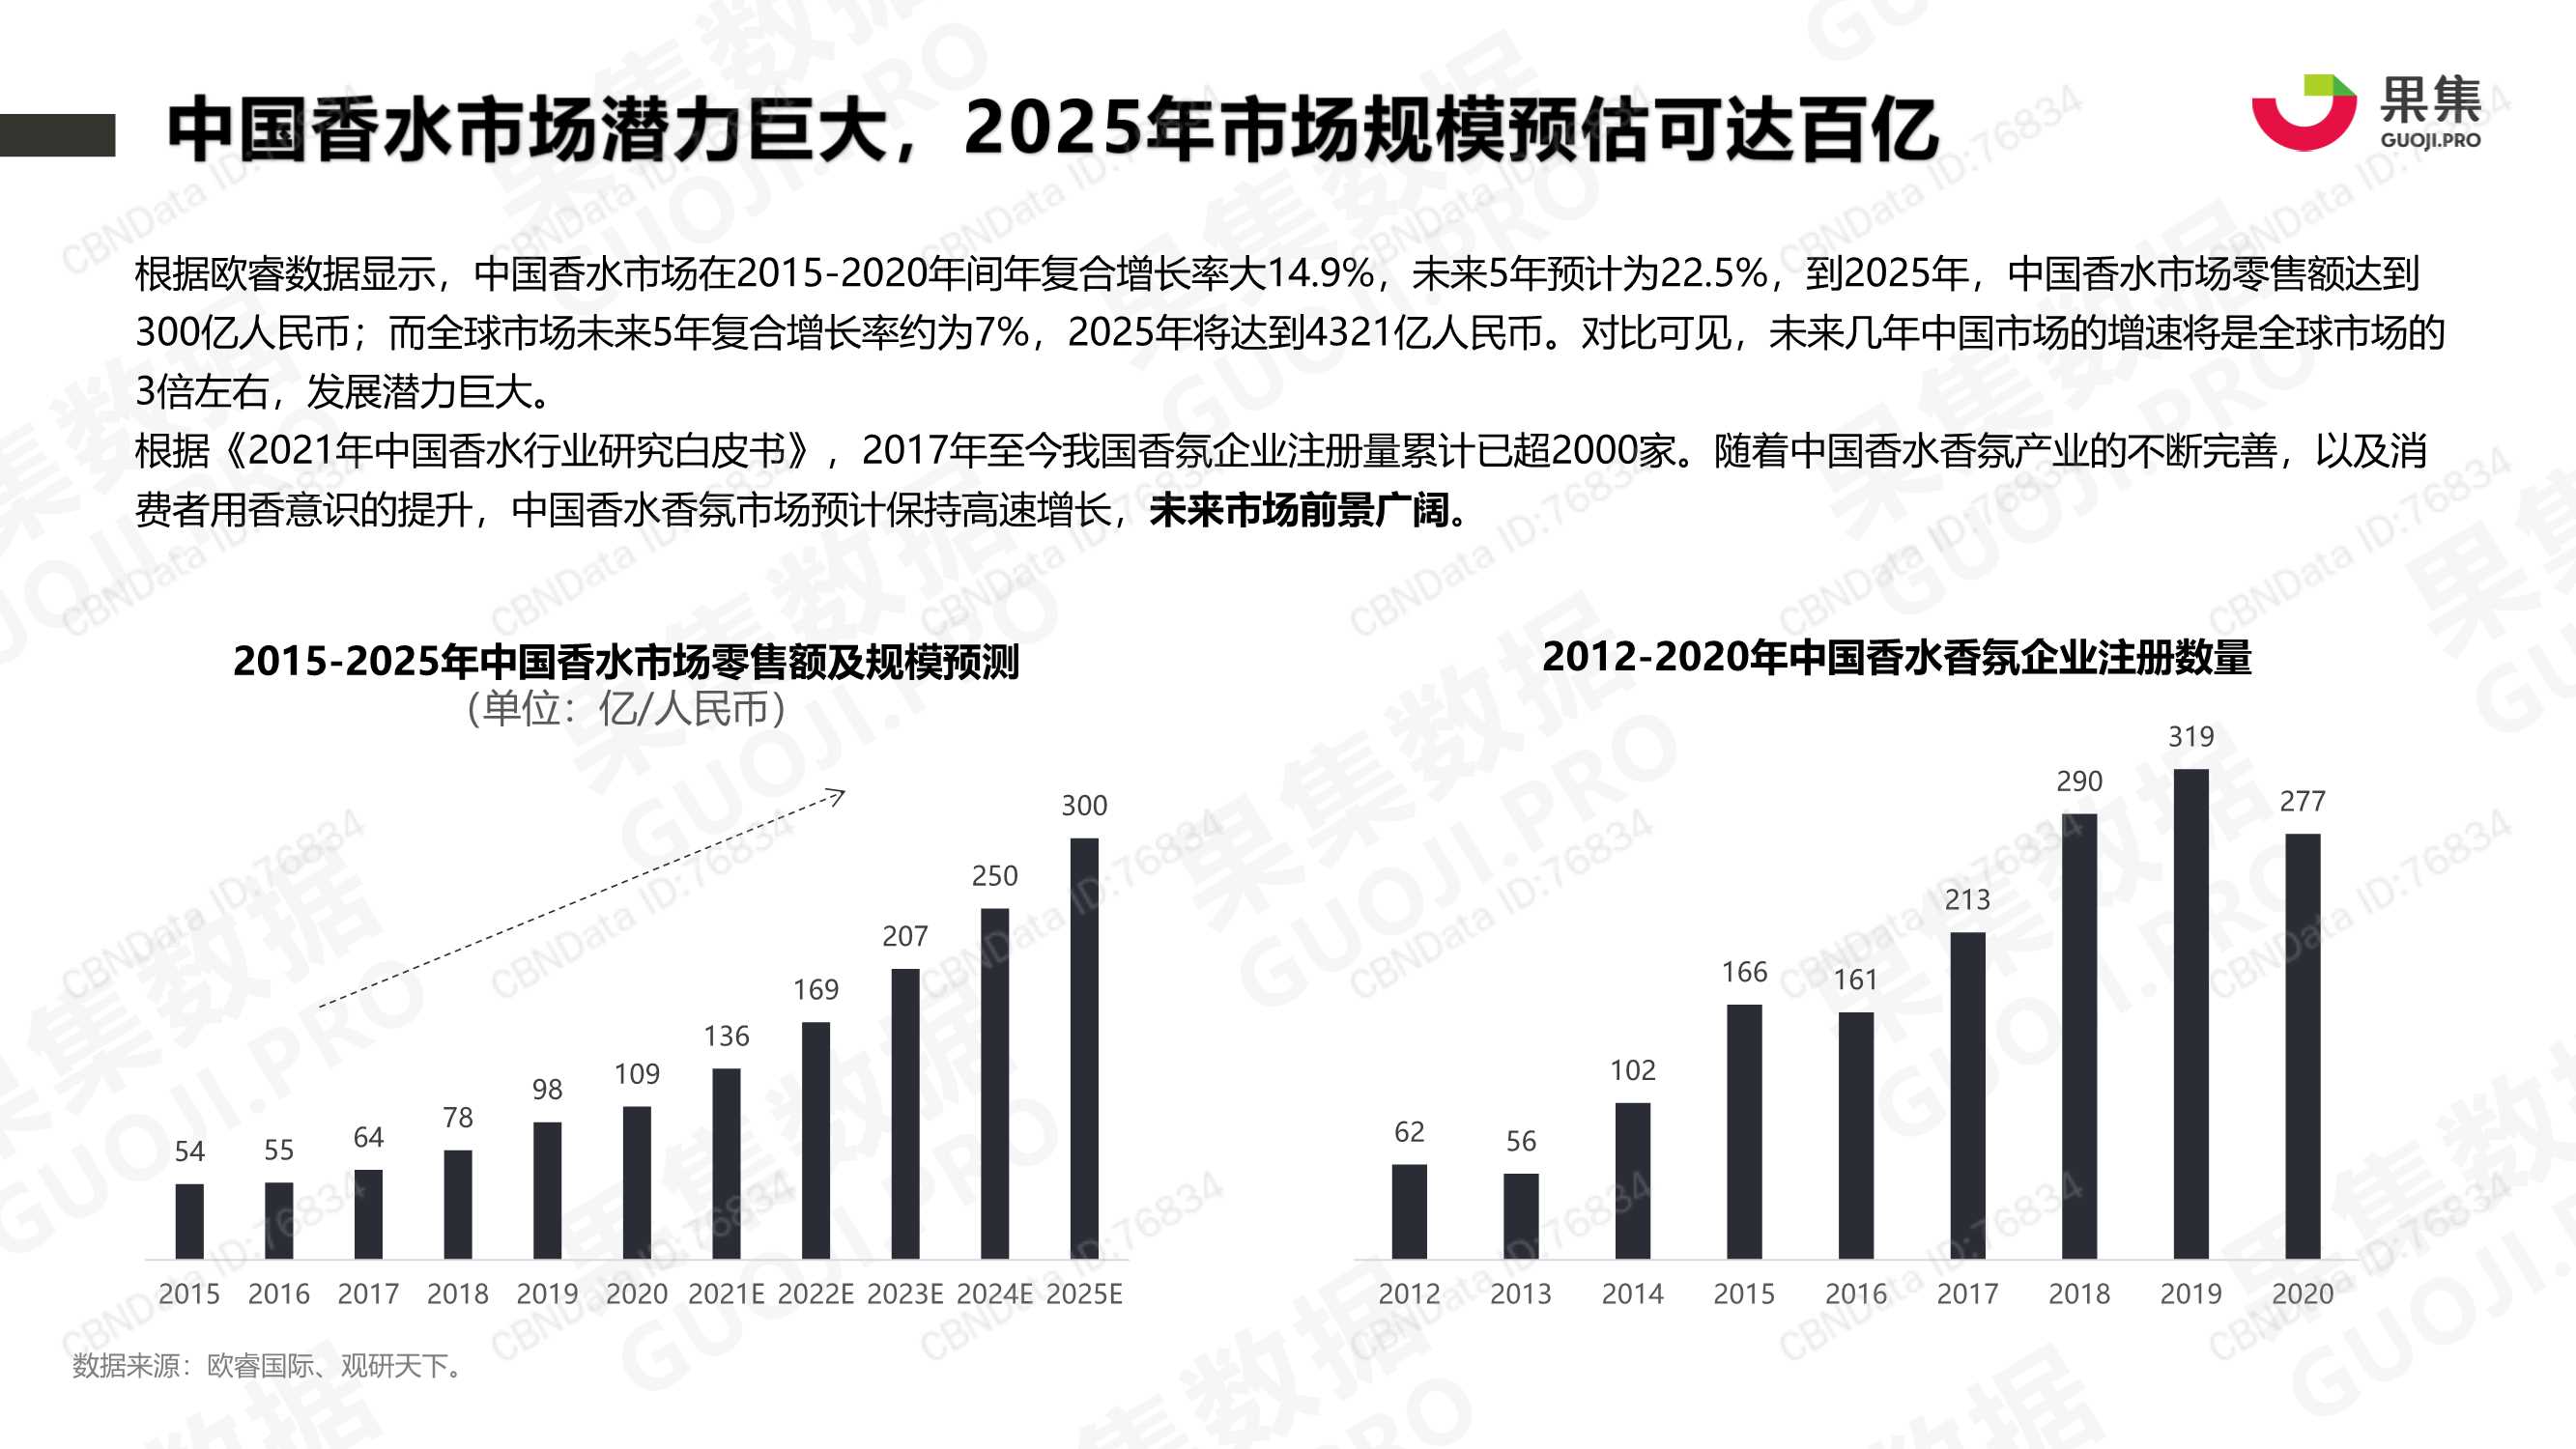 果集-2021年香水品牌社媒营销分析报告-2021.12-26页